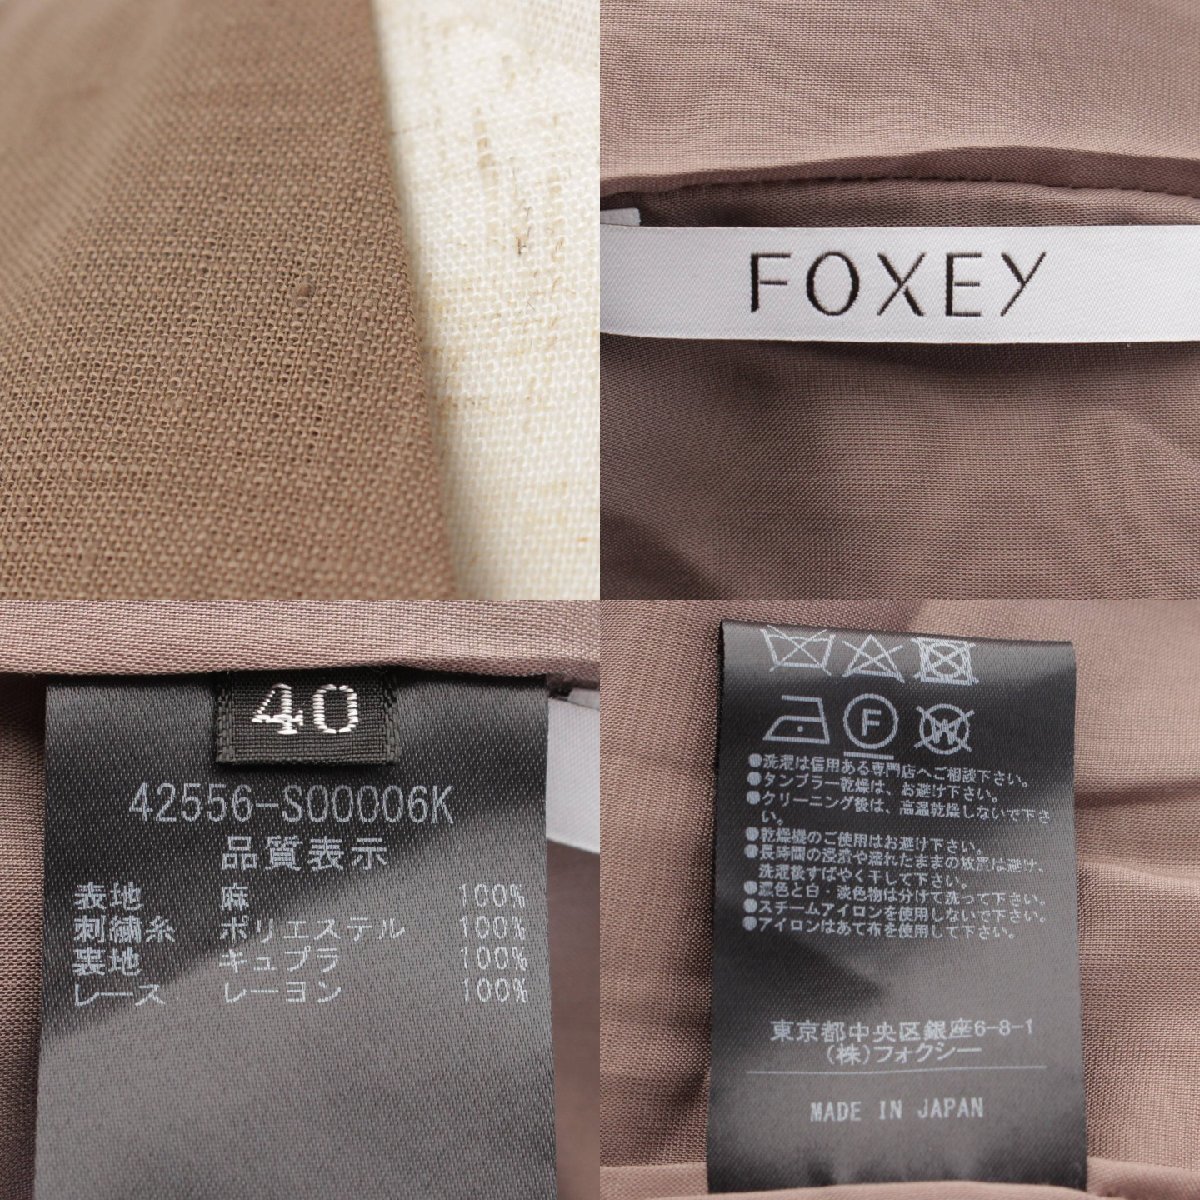 【フォクシー】Foxey　Dress Arles ドレス アルル ノースリーブ ワンピース 42556 ココアブラウン 40 【中古】【正規品保証】178330_画像9